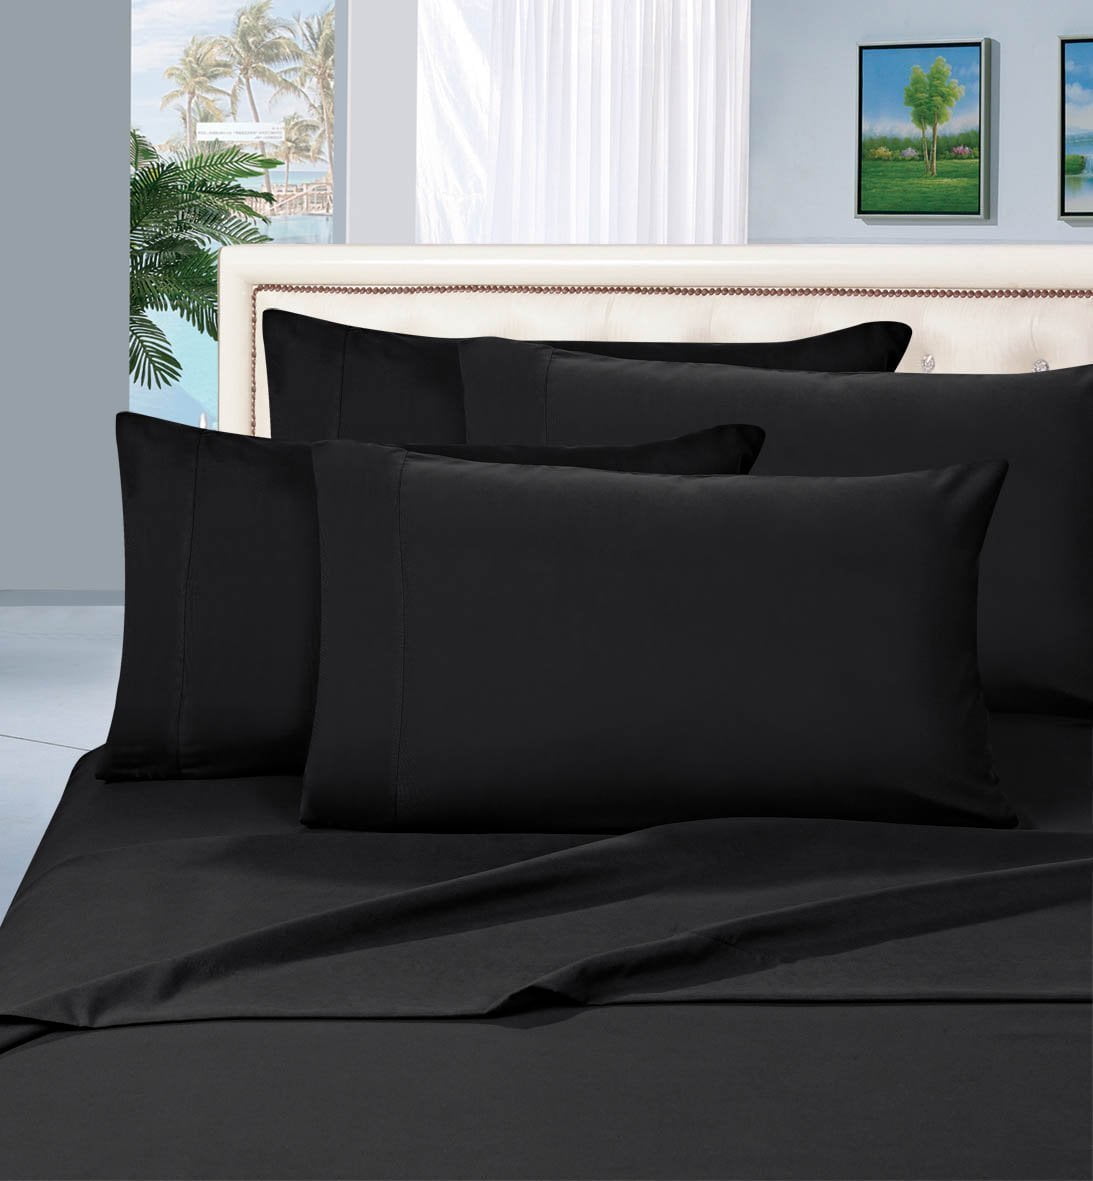 Soft Bed Sheets Set 4 Piece Deep Pocket Bedding Sets Wrinkle Free Hypoallergenic 